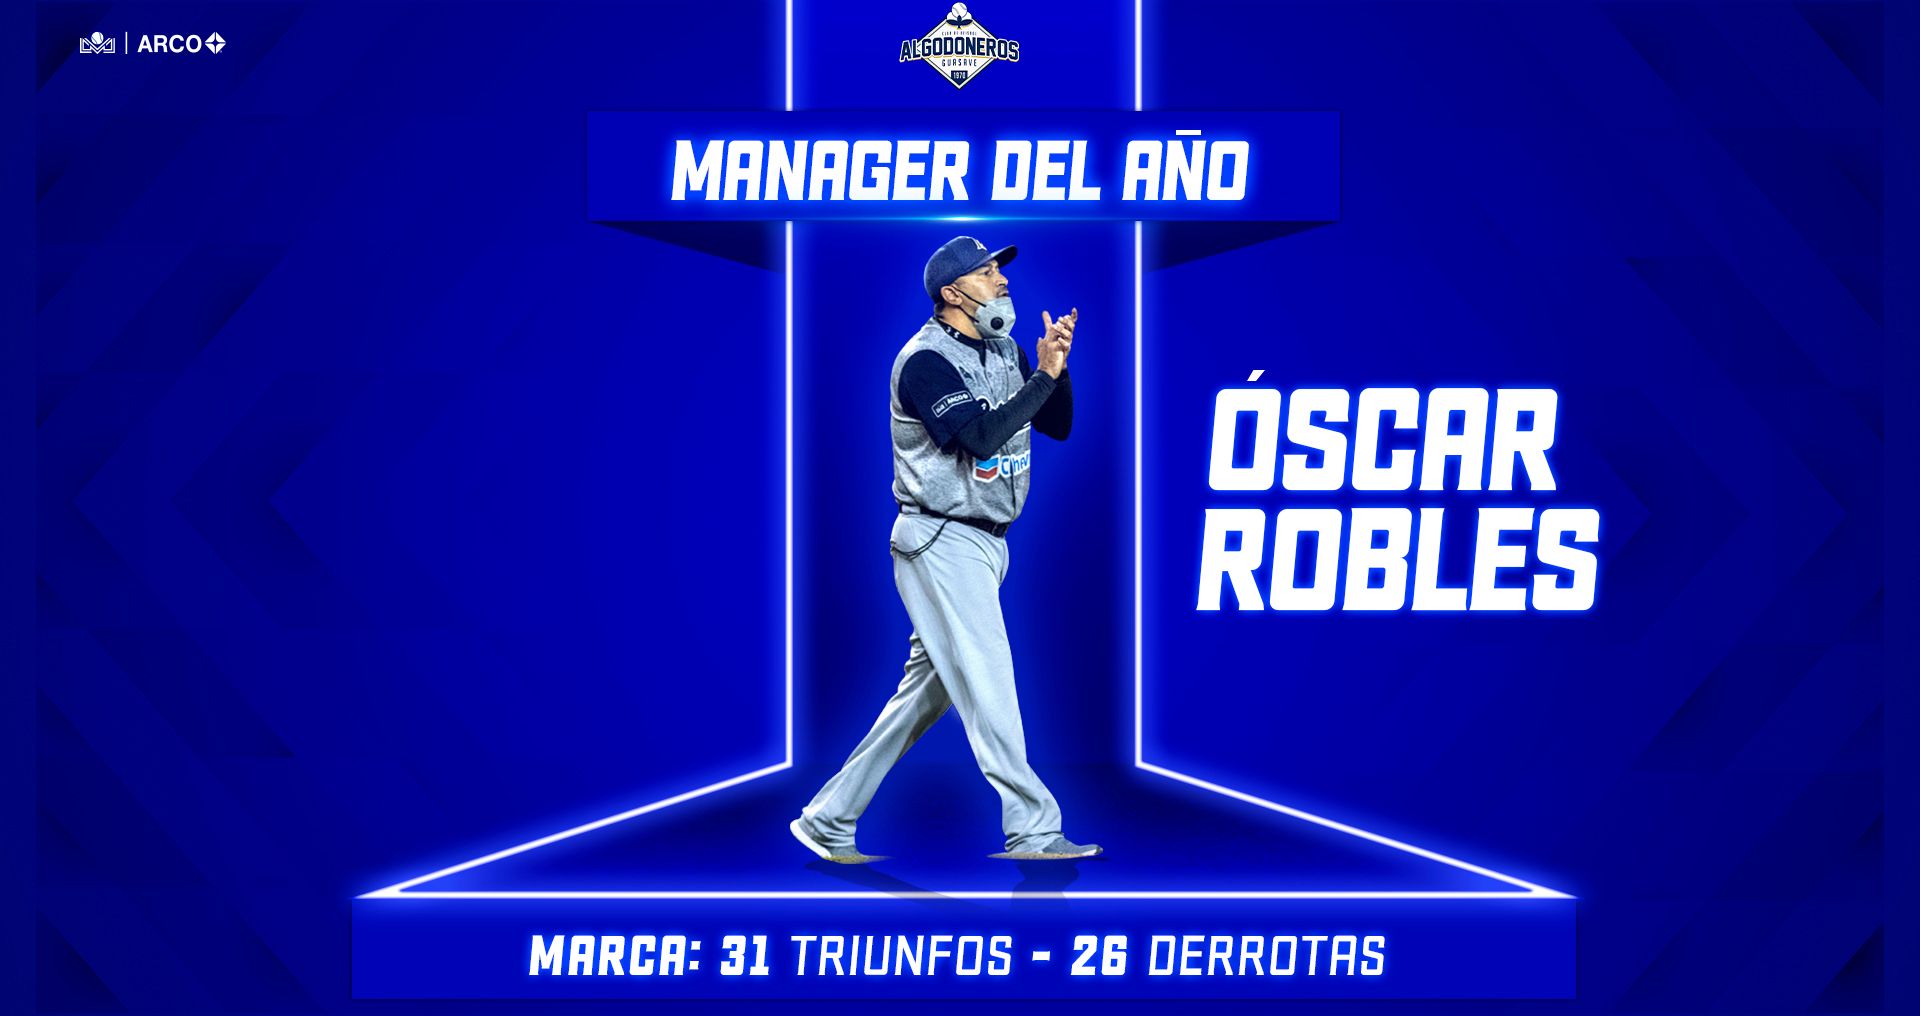 Oscar Robles gana el premio manager del año